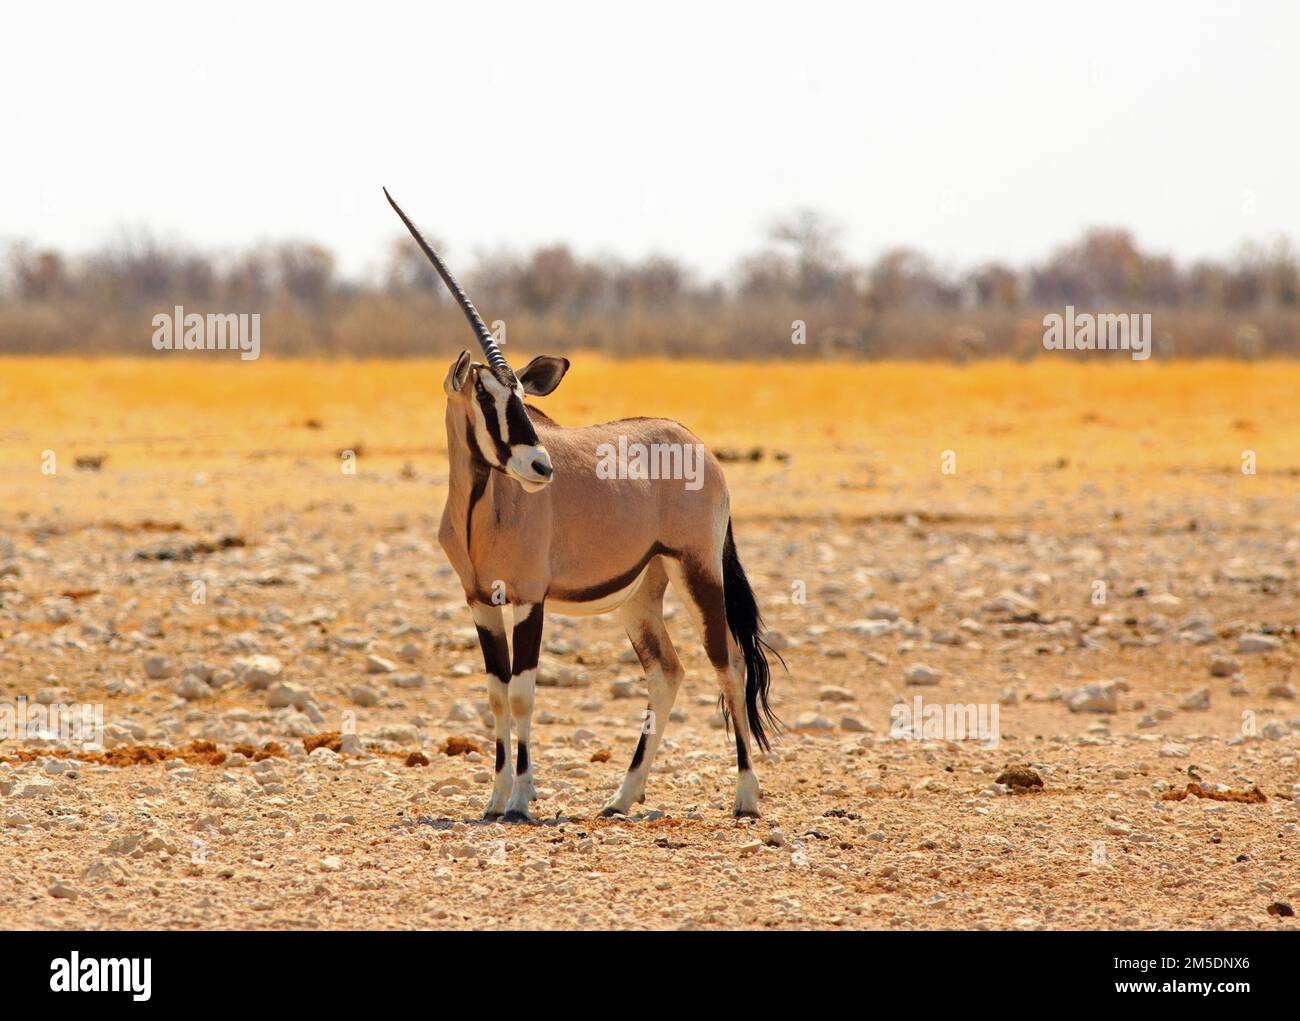 Isolierter One Horned Gemsbok Oryx, der auf trockenen, staubigen afrikanischen Ebenen steht Stockfoto